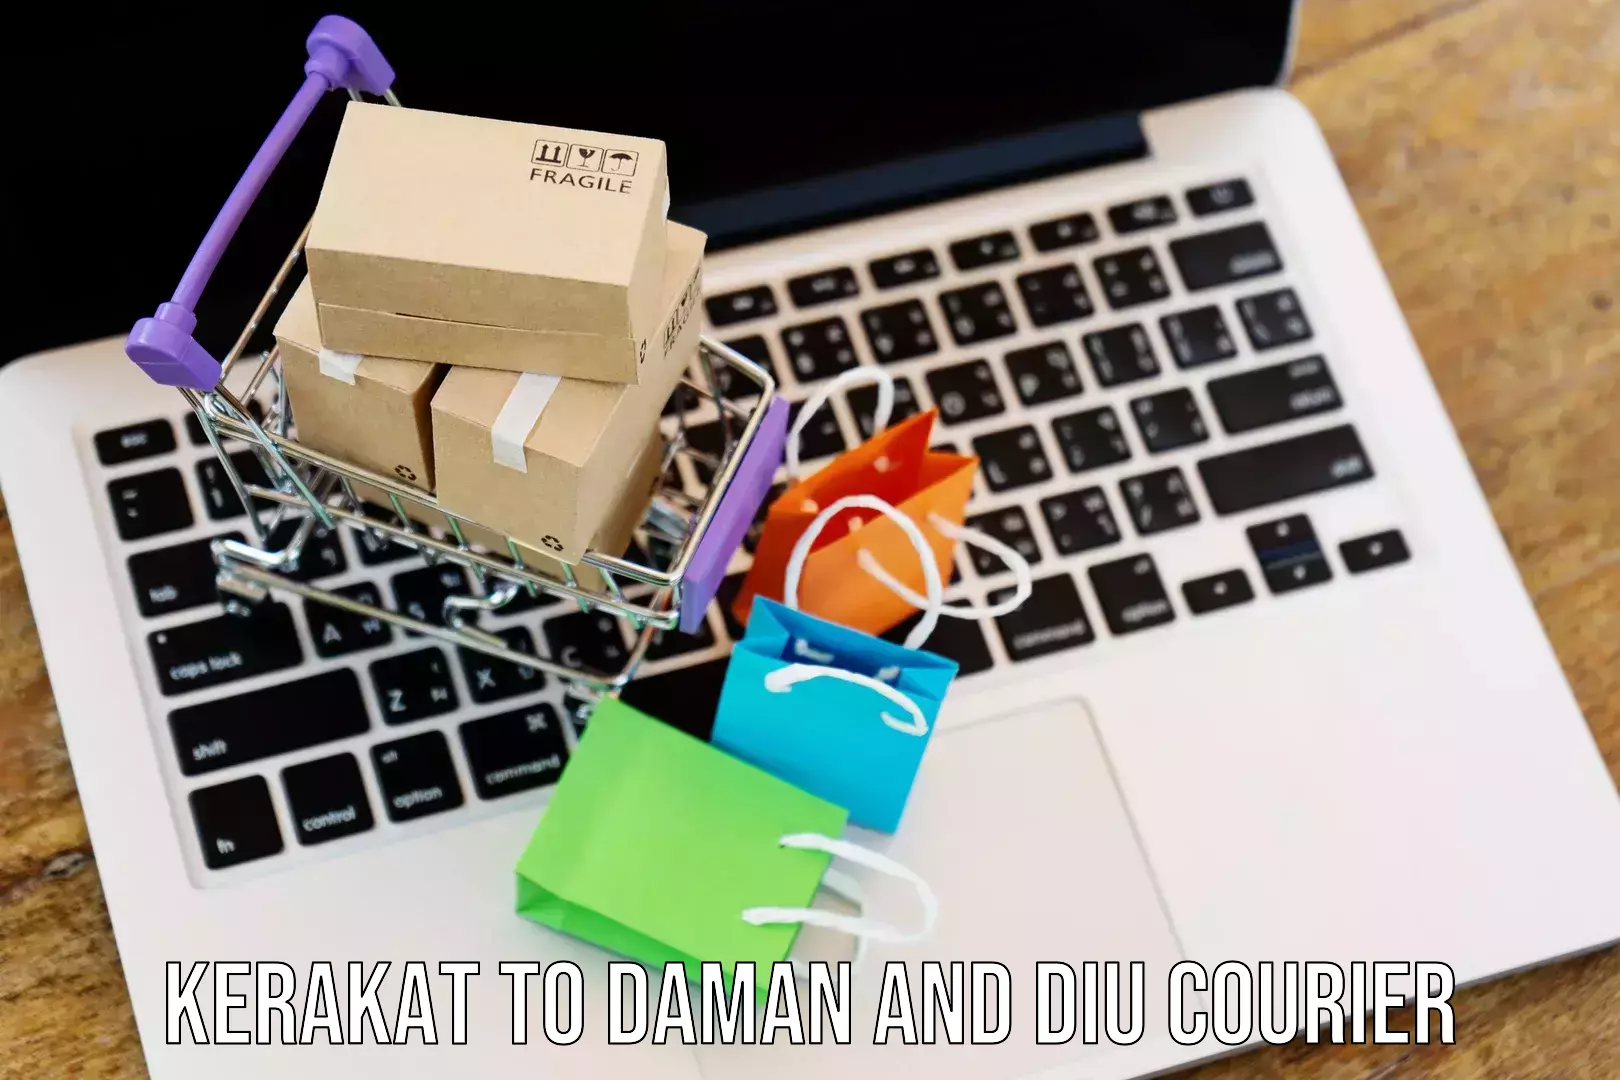 Online shipping calculator Kerakat to Daman and Diu